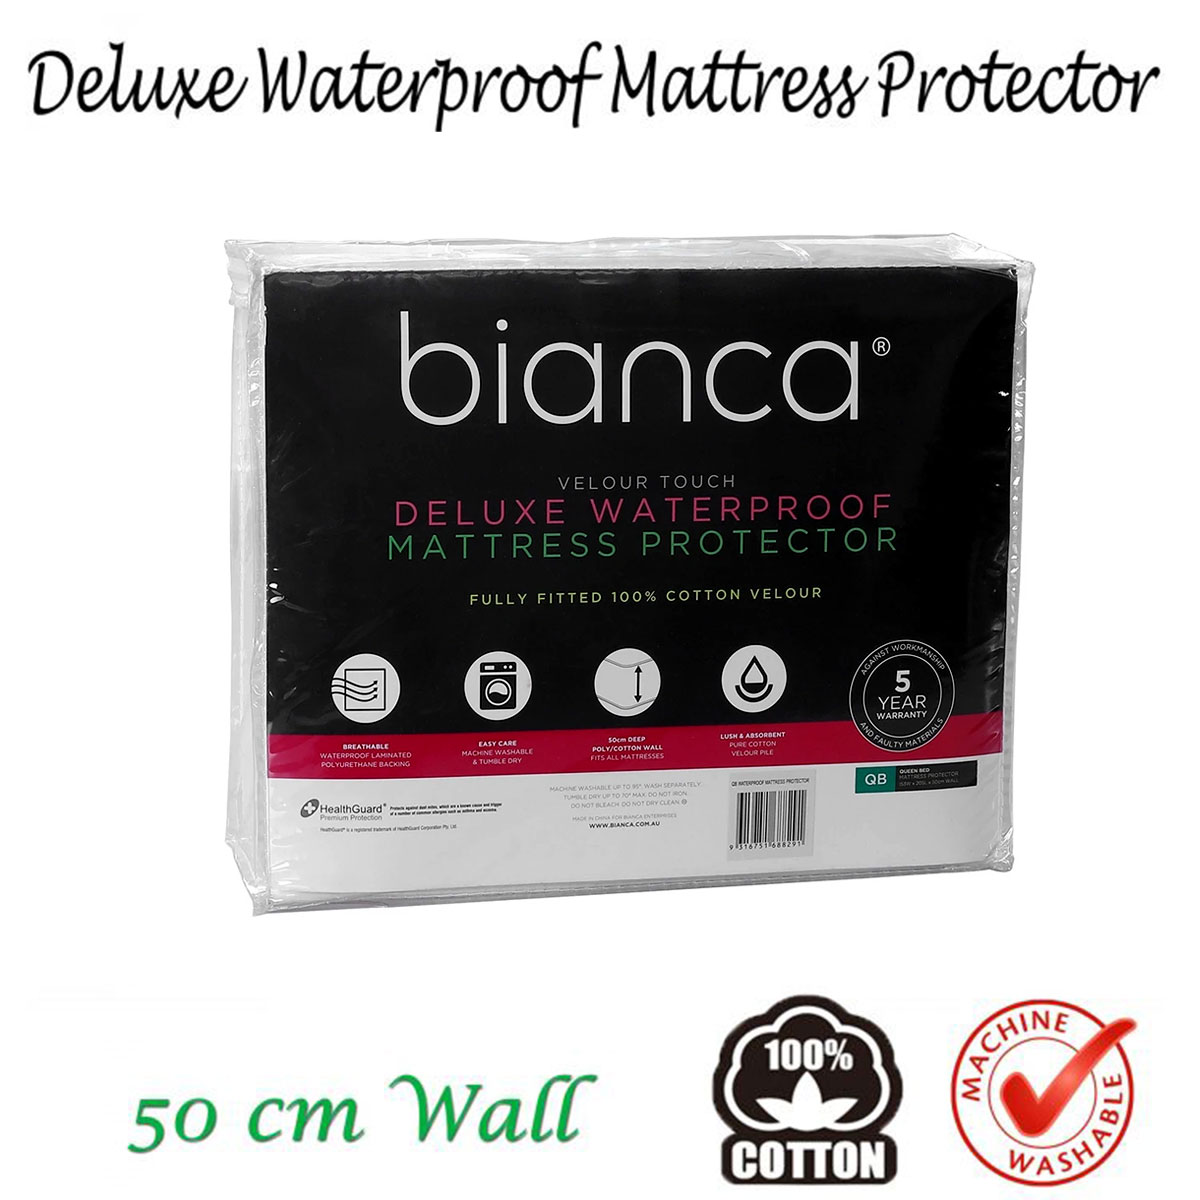 Deluxe Waterproof Mattress Protector by Bianca